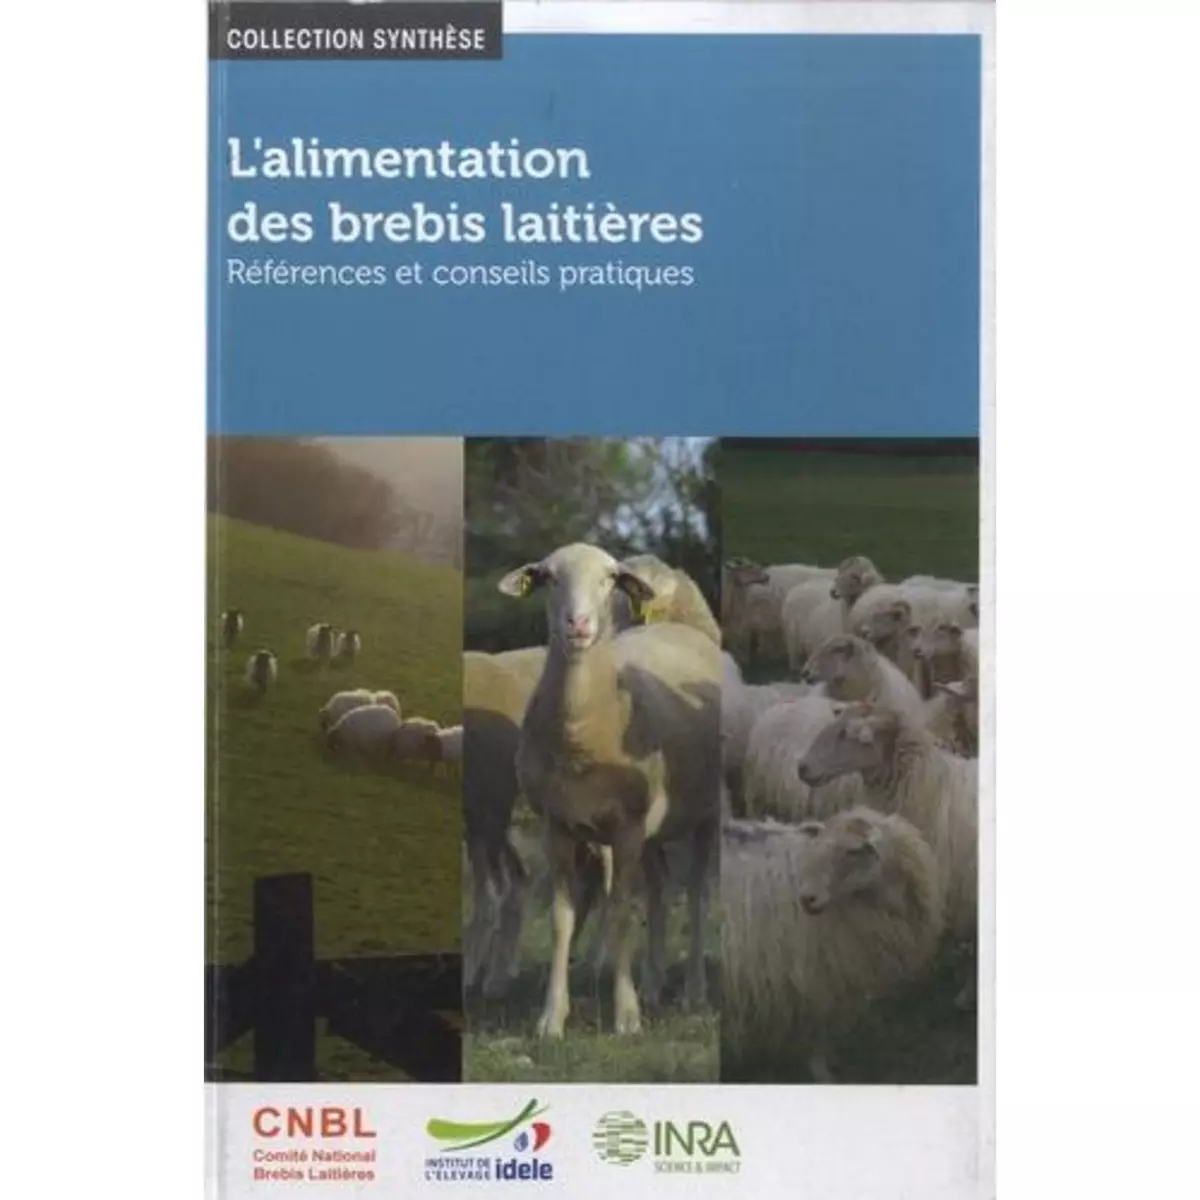  L'ALIMENTATION DES BREBIS LAITIERES. REFERENCES ET CONSEILS PRATIQUES, Groupe Alimentation du CNBL